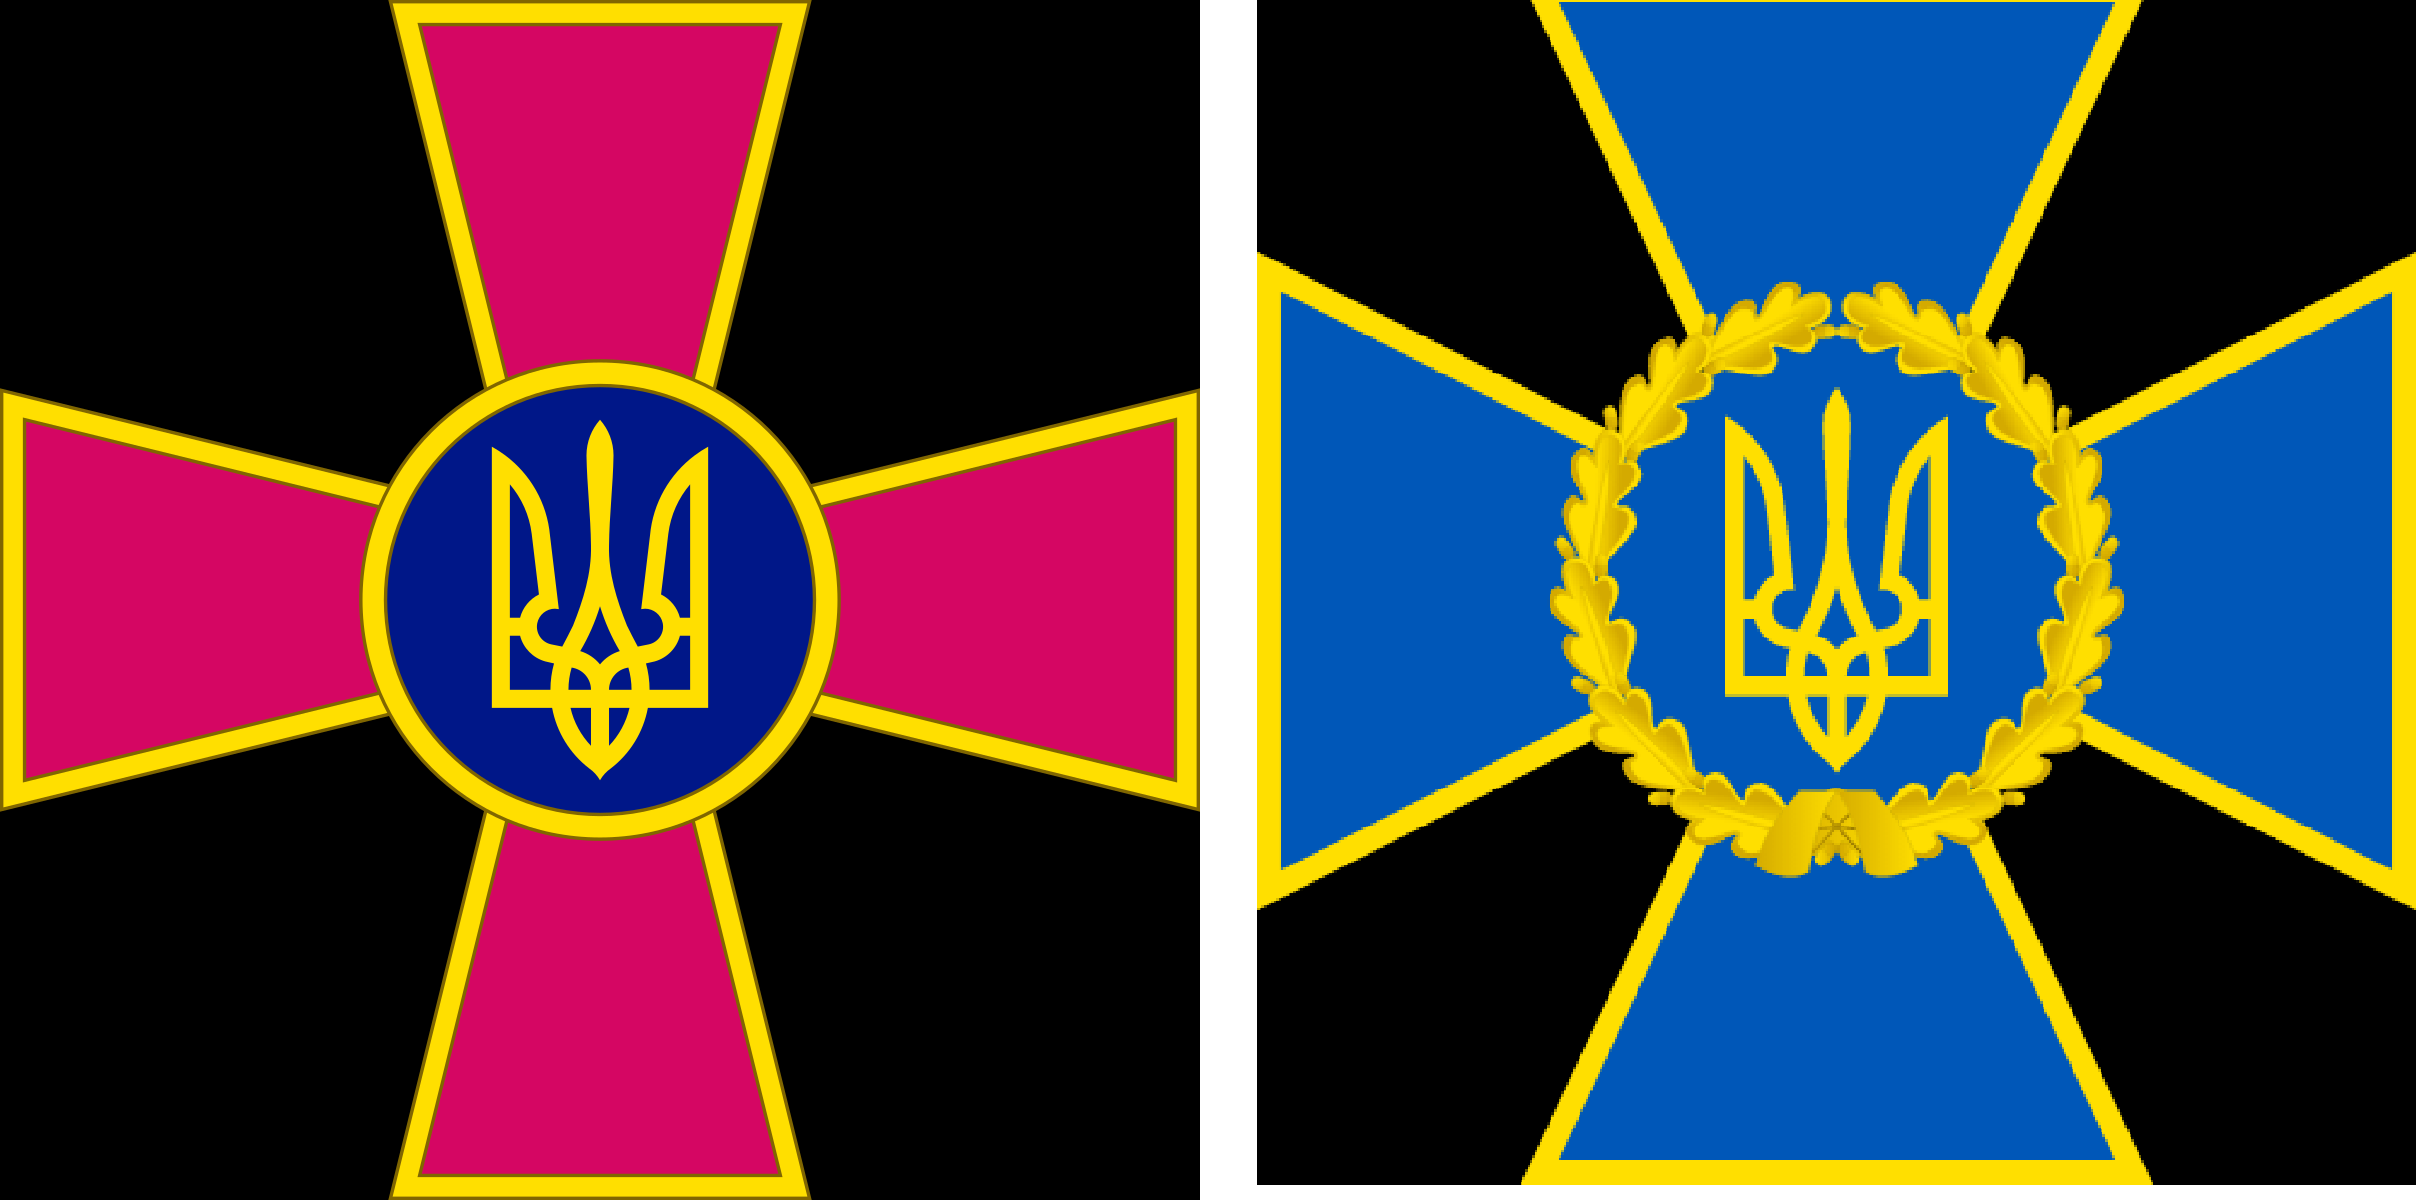 Козацький хрест на емблемах ЗСУ та СБУ. Зображення: Вікіпедія